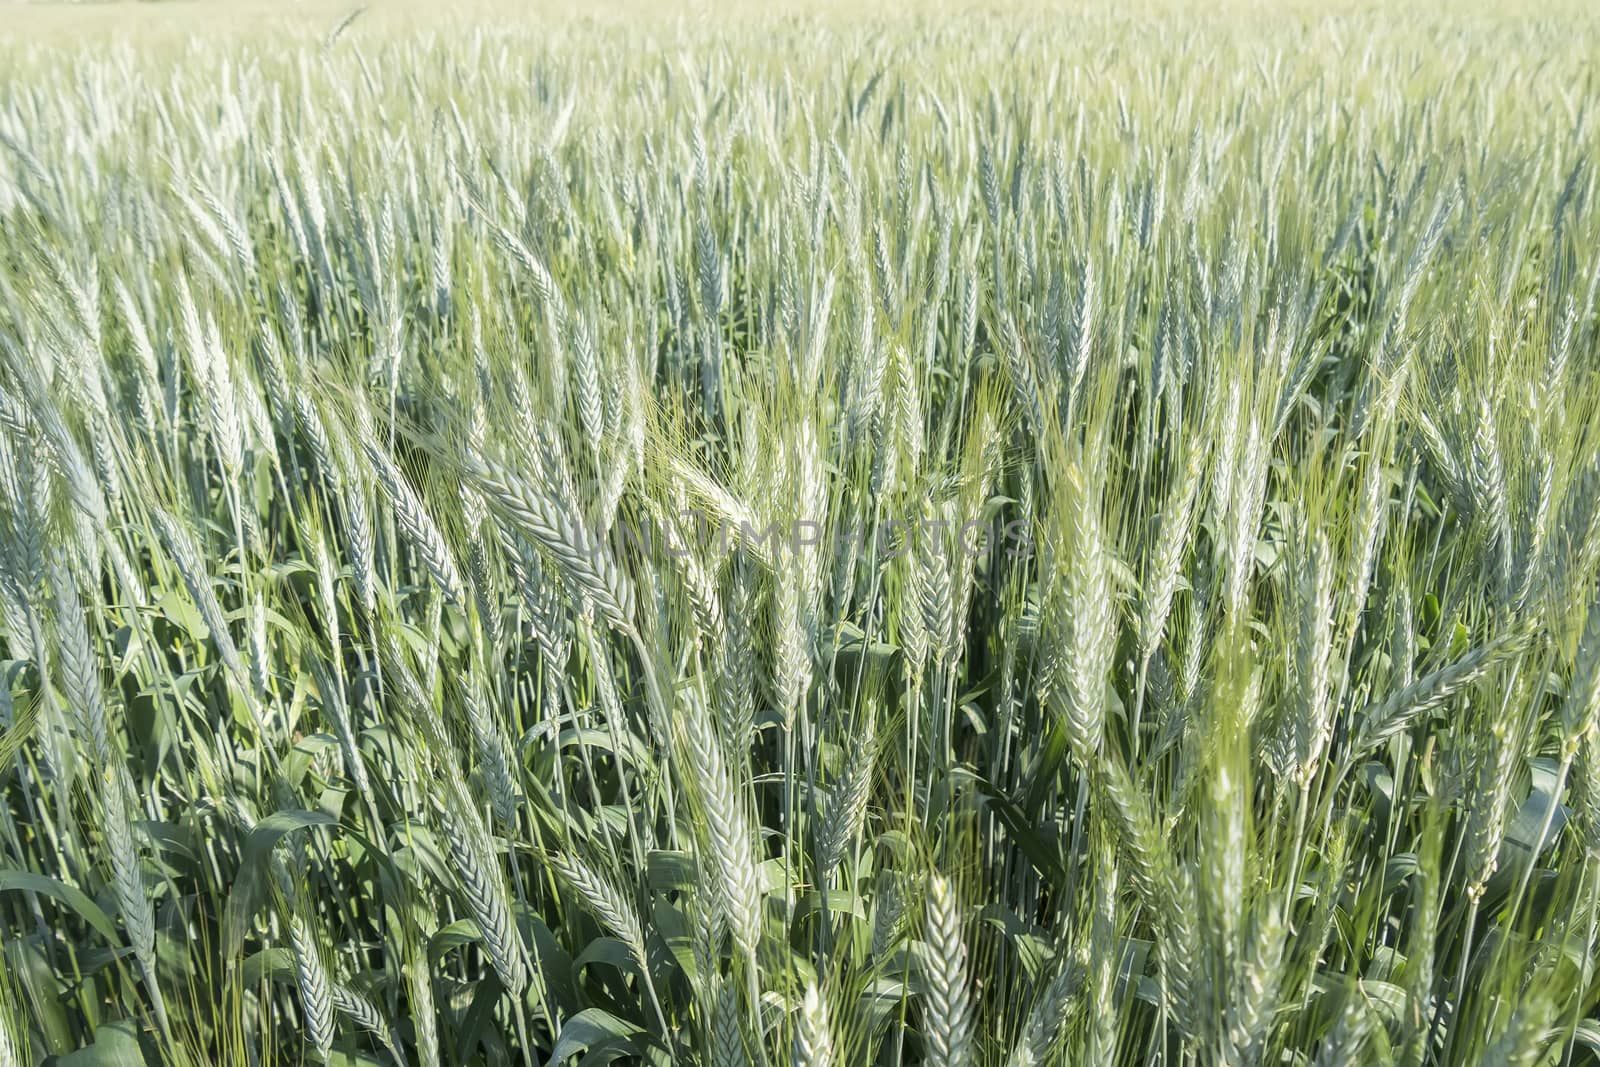 Unripe wheat ears, green field by max8xam